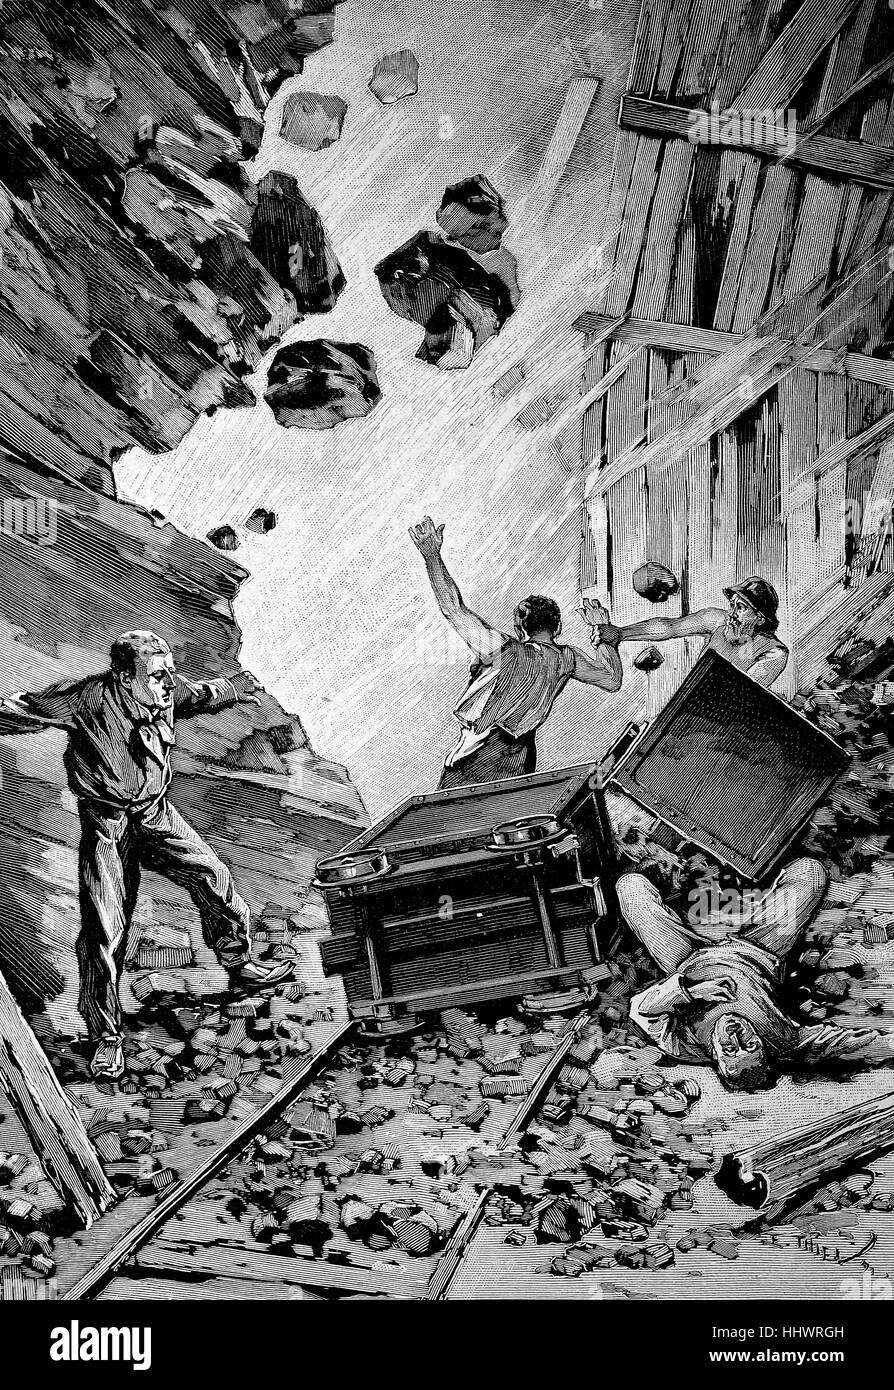 Un pitfall, minatori sono gravemente feriti o uccisi dalla caduta di massi, Germania, immagine storica o illustrazione, pubblicato 1890, digitale migliorata Foto Stock